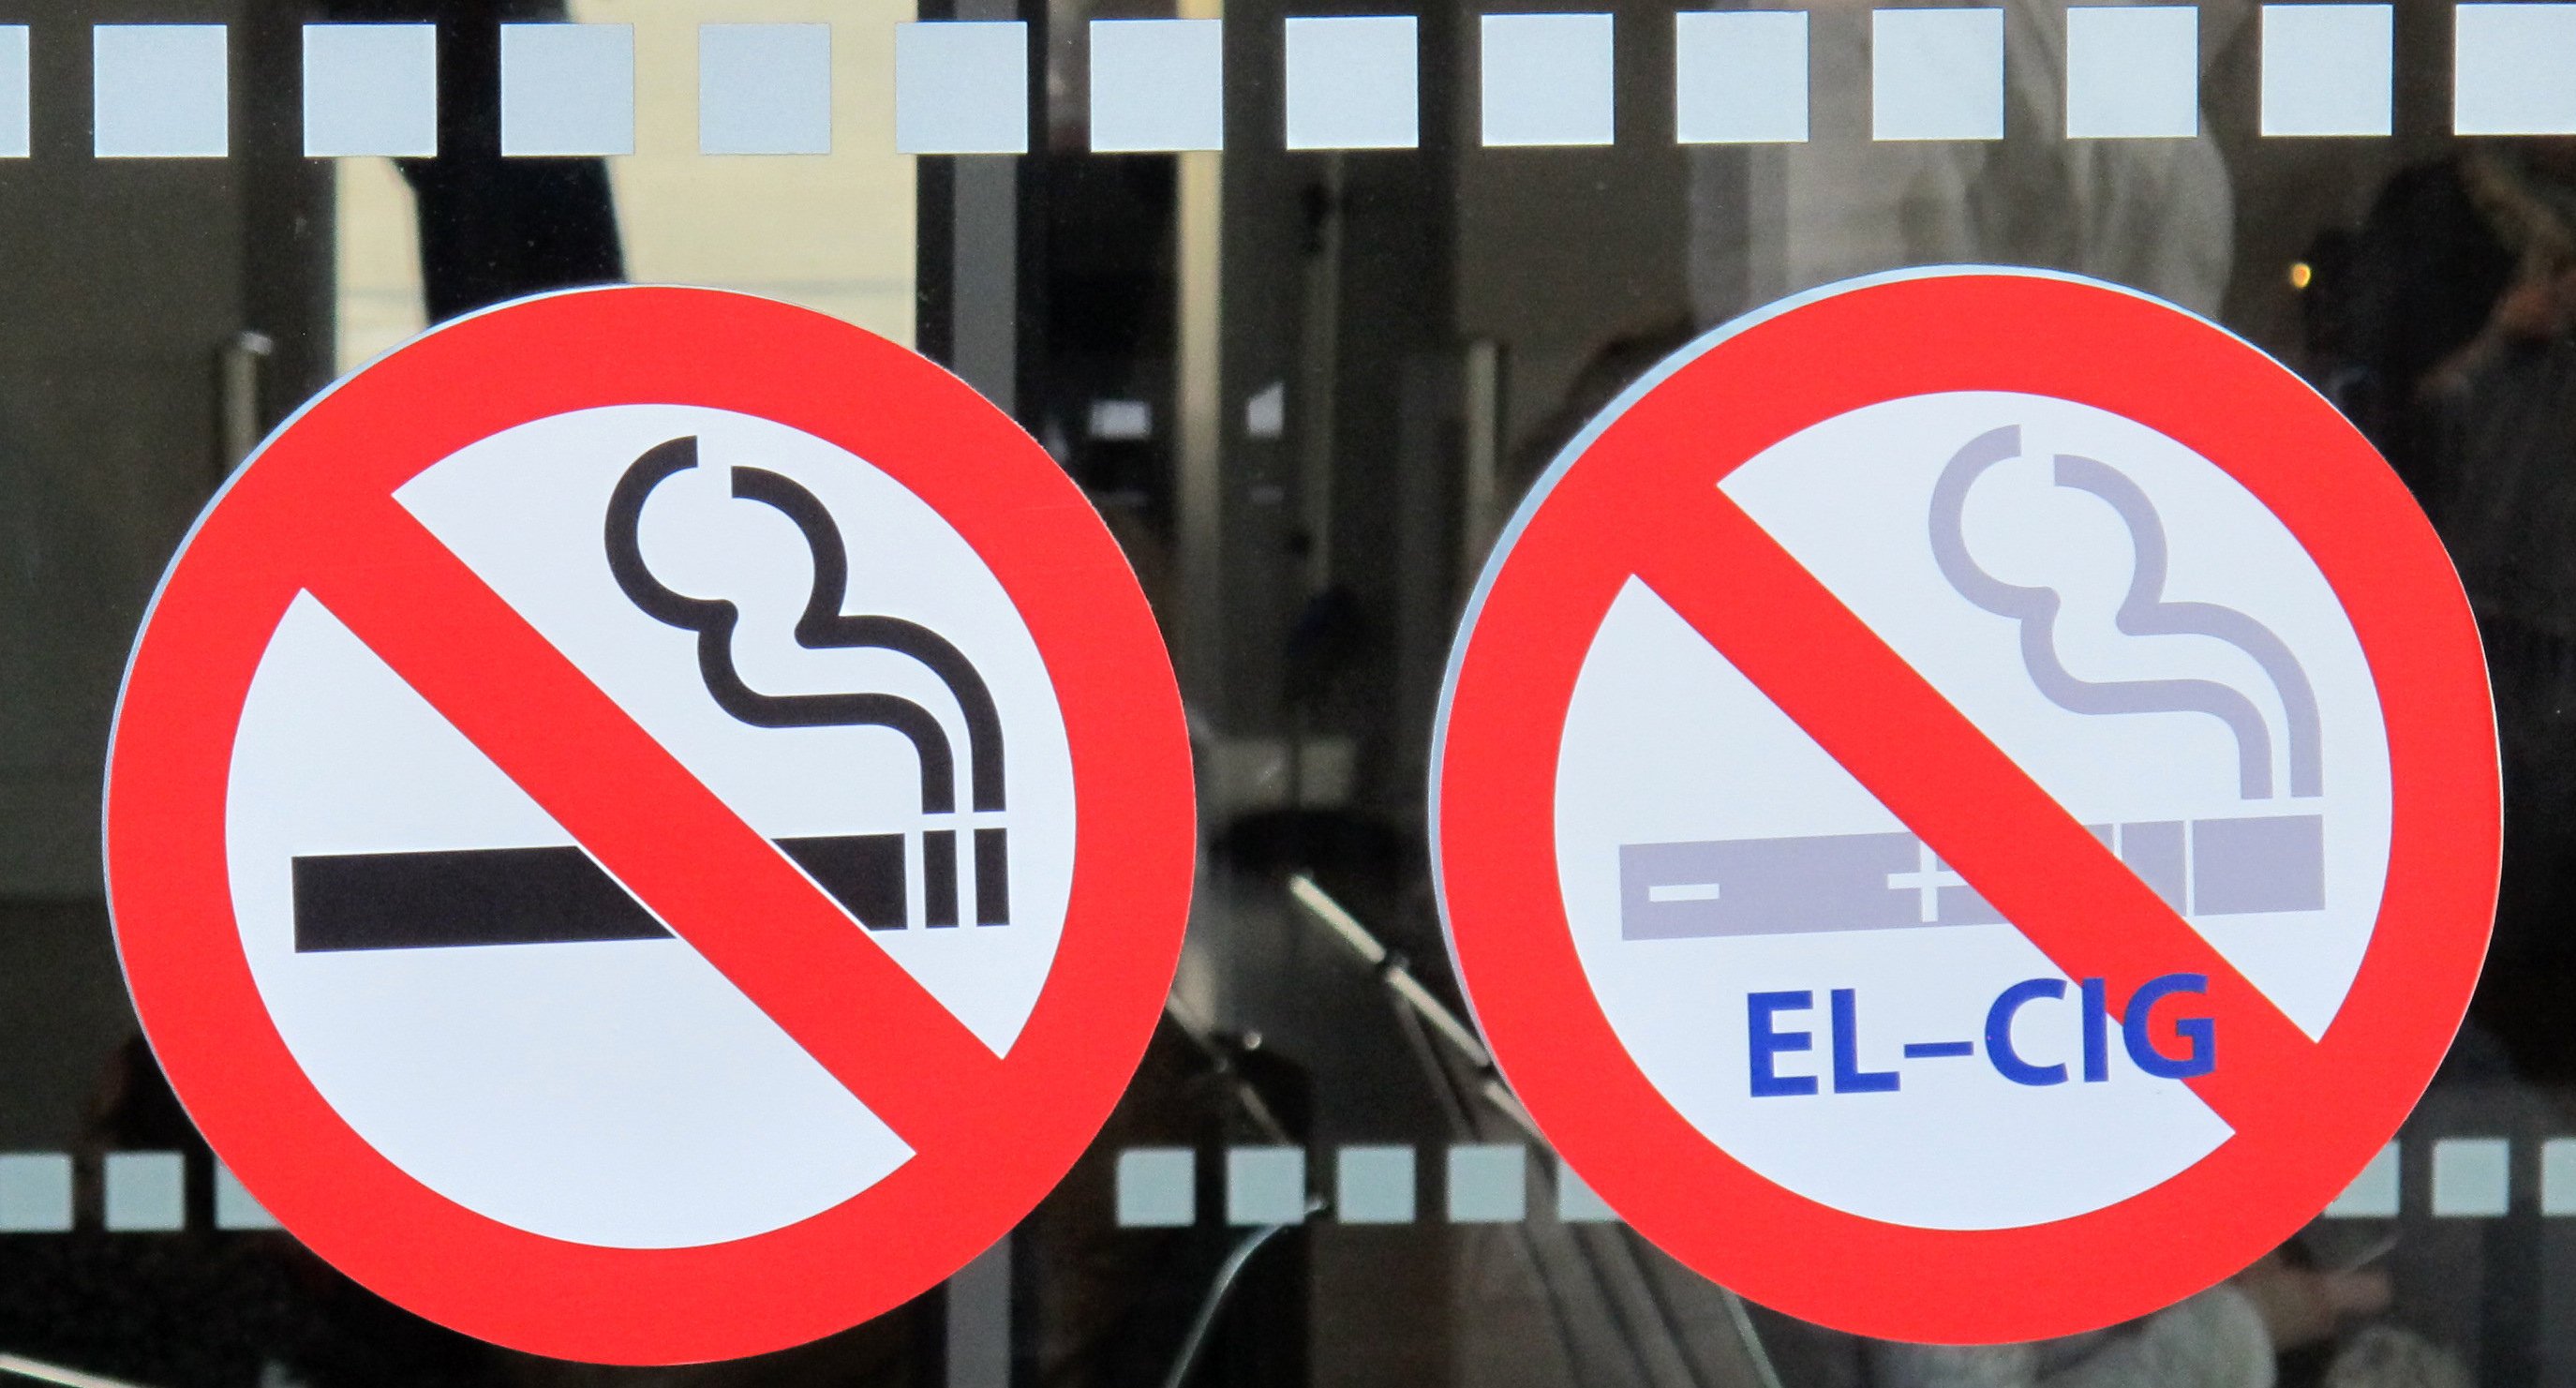 Der Bundestag hat gestern einen Gesetzesentwurf verabschiedet, mit dem das bereits bestehende Abgabe- und Konsumverbot für Tabakwaren auf elektronische Zigaretten und Shishas ausgedehnt wird.